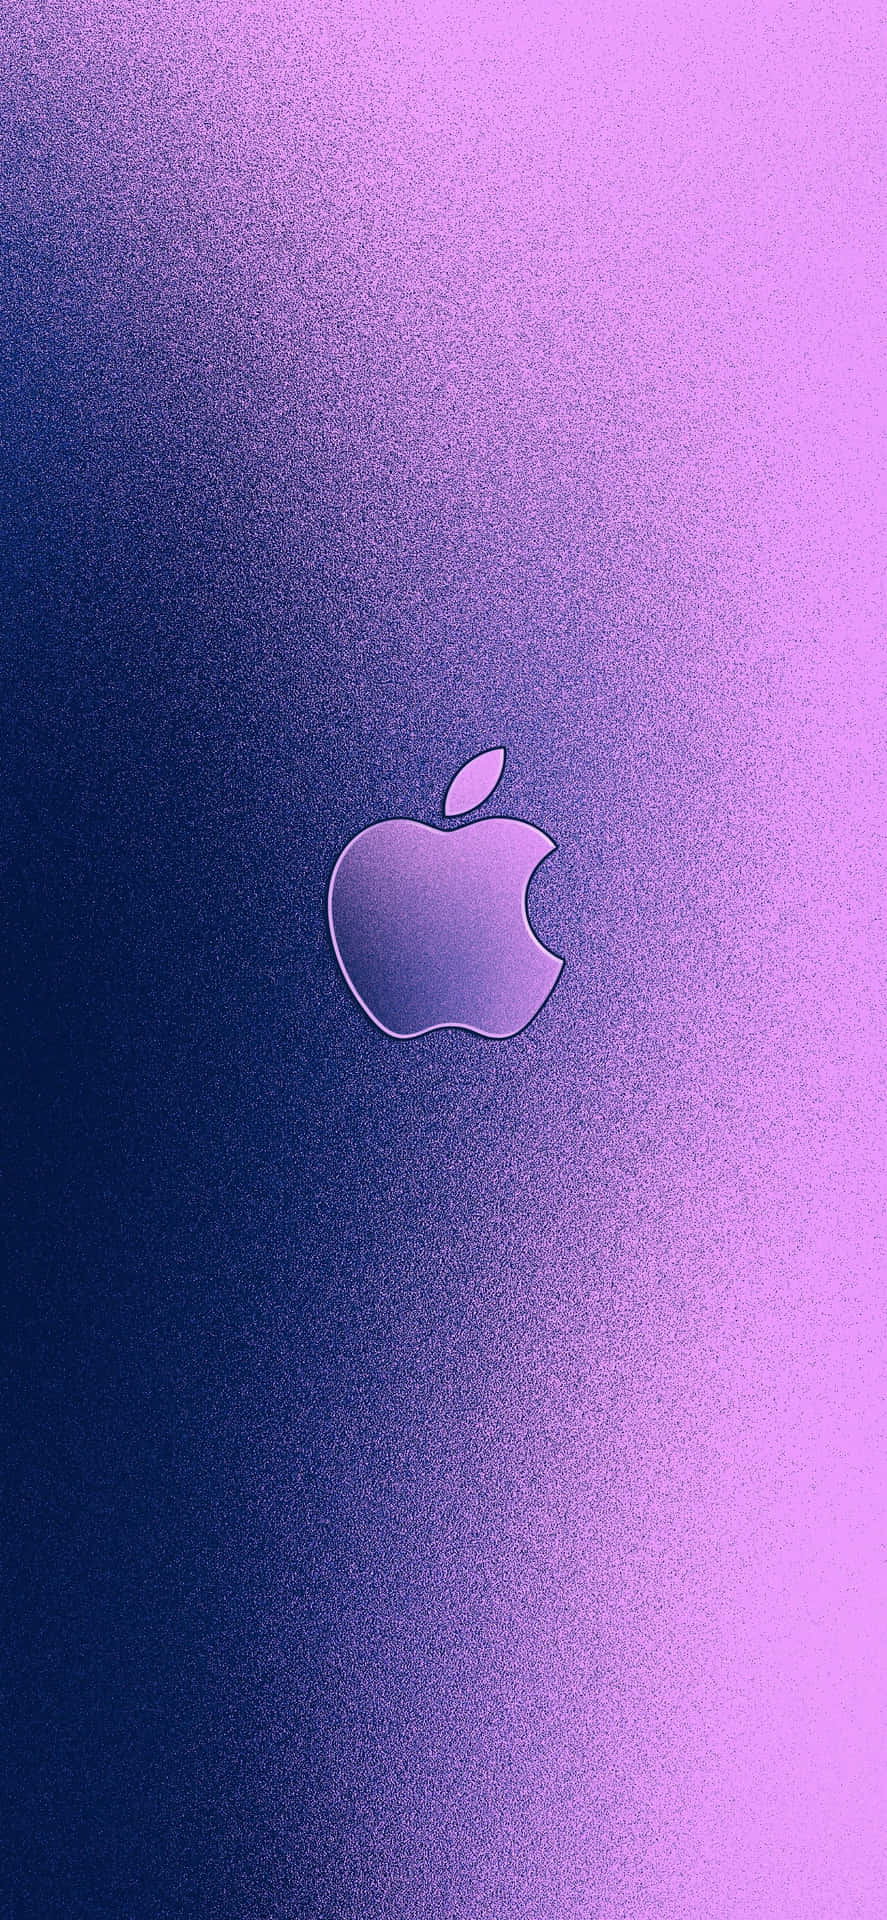 Umolhar Detalhado No Logotipo Da Apple Em Um Iphone X. Papel de Parede